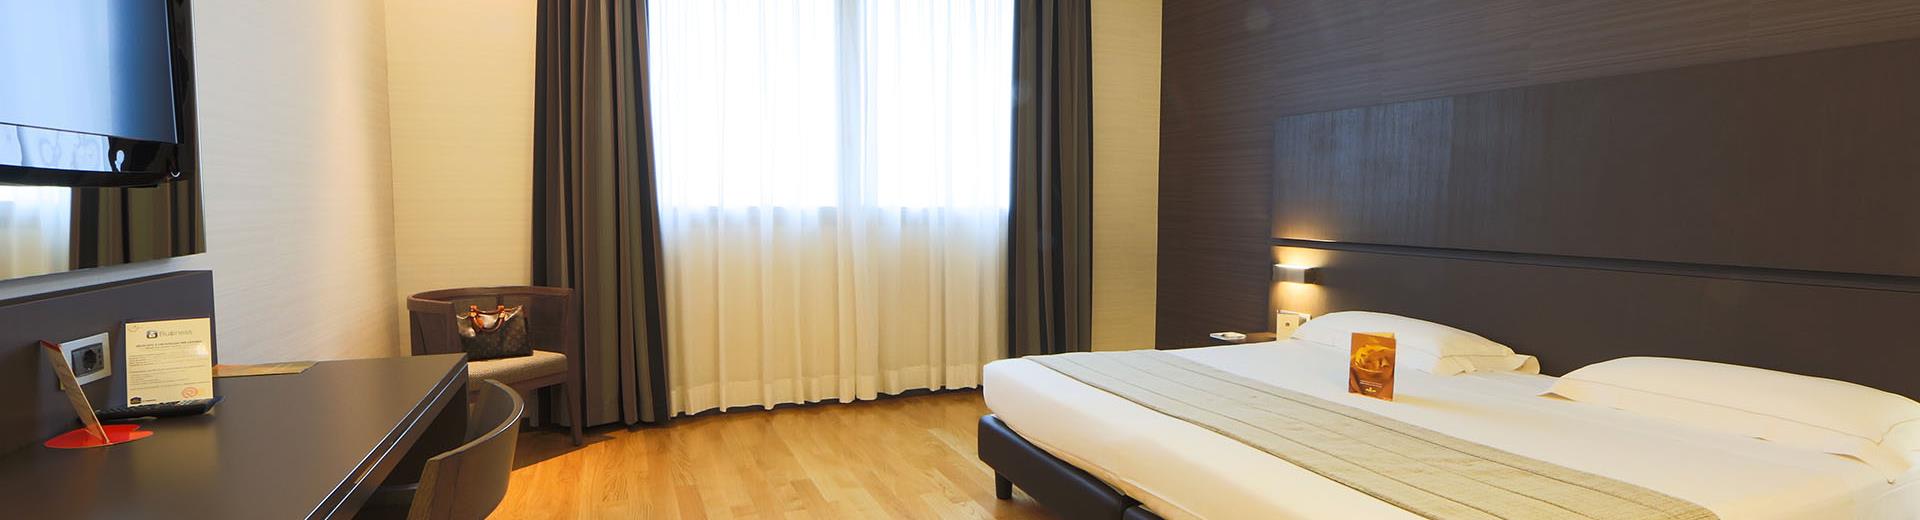 Scopri le tipologie di camere dotate di ogni comfort del nostro hotel 4 stelle a due passi da Milano.